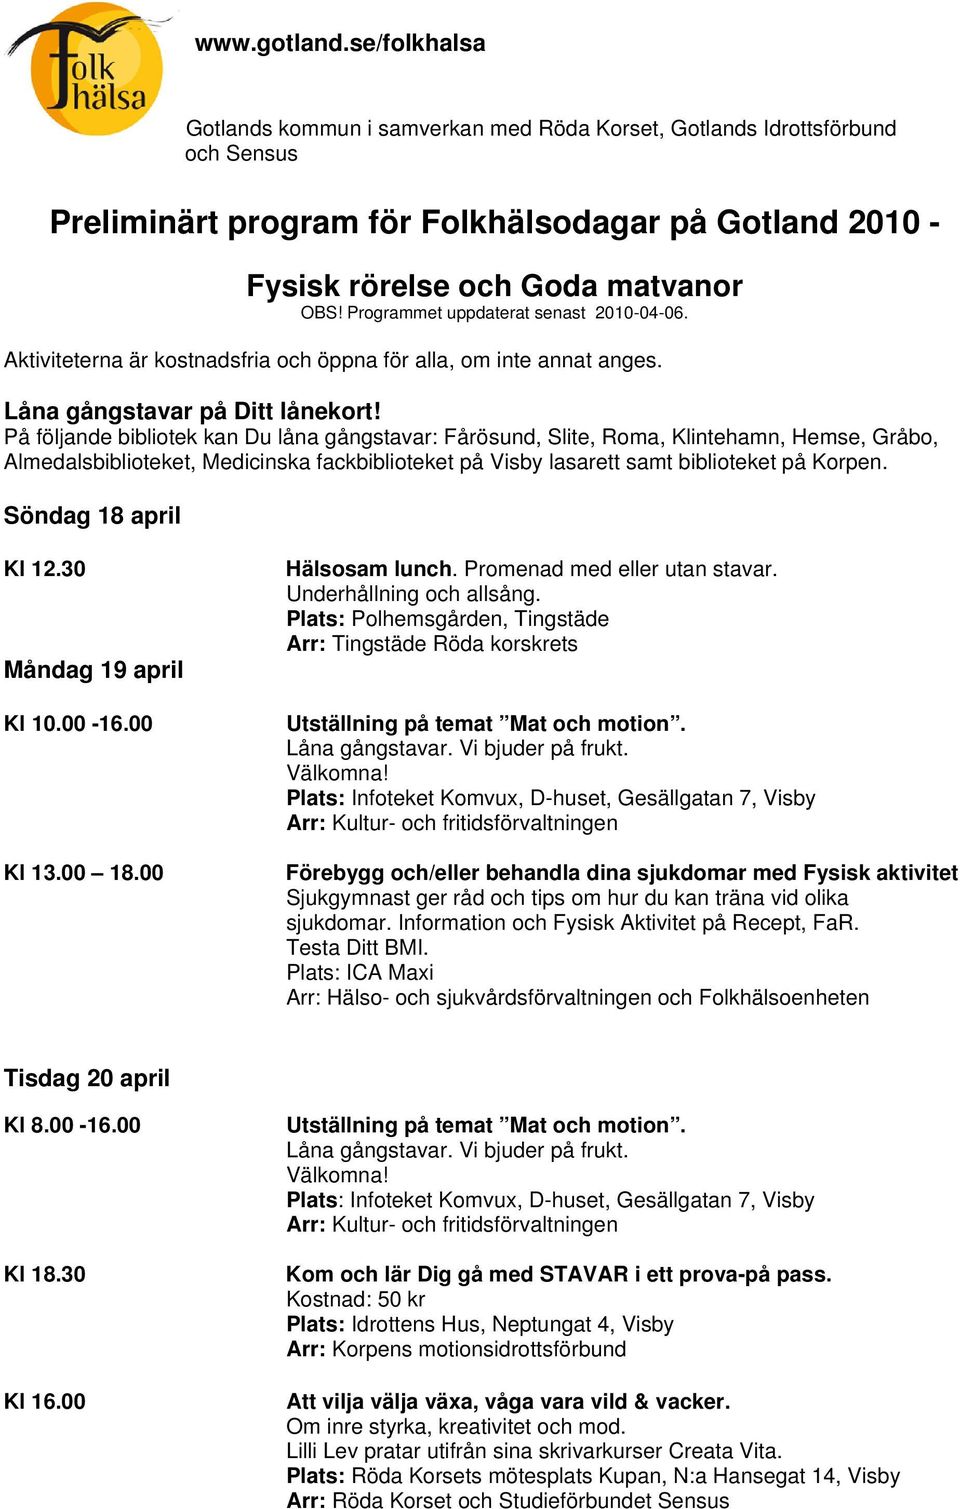 Preliminärt program för Folkhälsodagar på Gotland - PDF Free Download